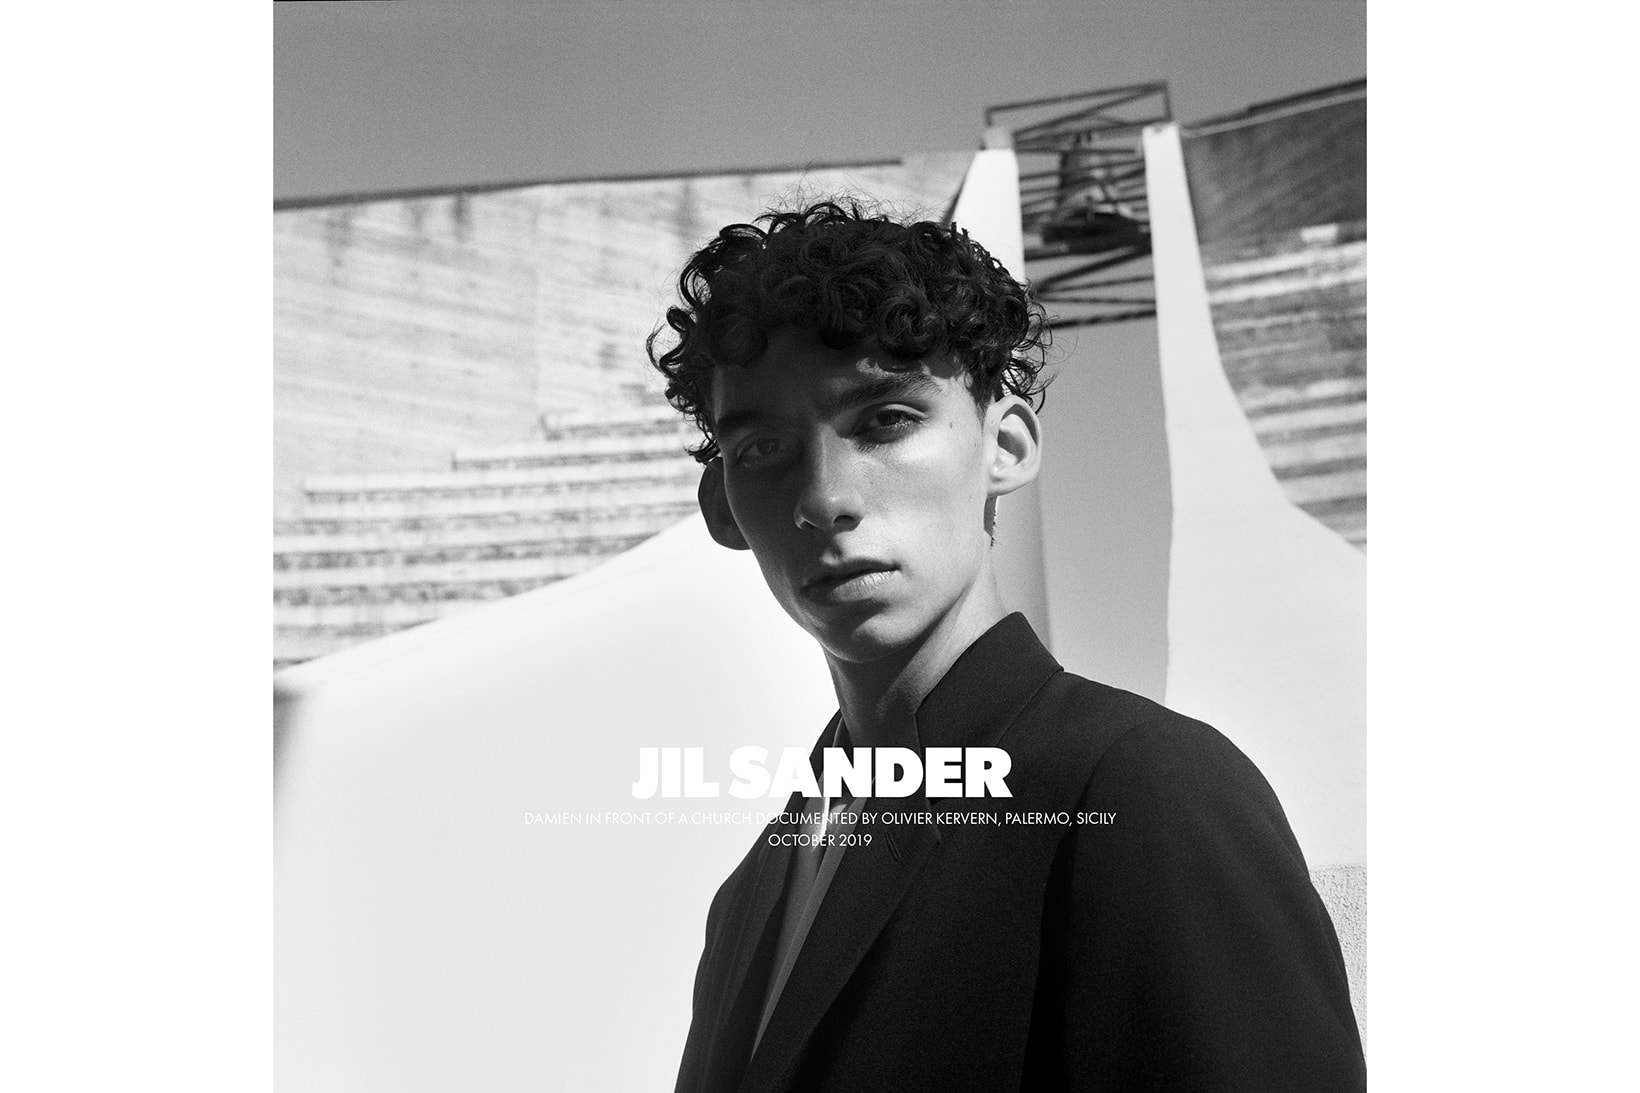 Jil Sander Spring/Summer 2020 Collection Campaign Men's Jacket Black